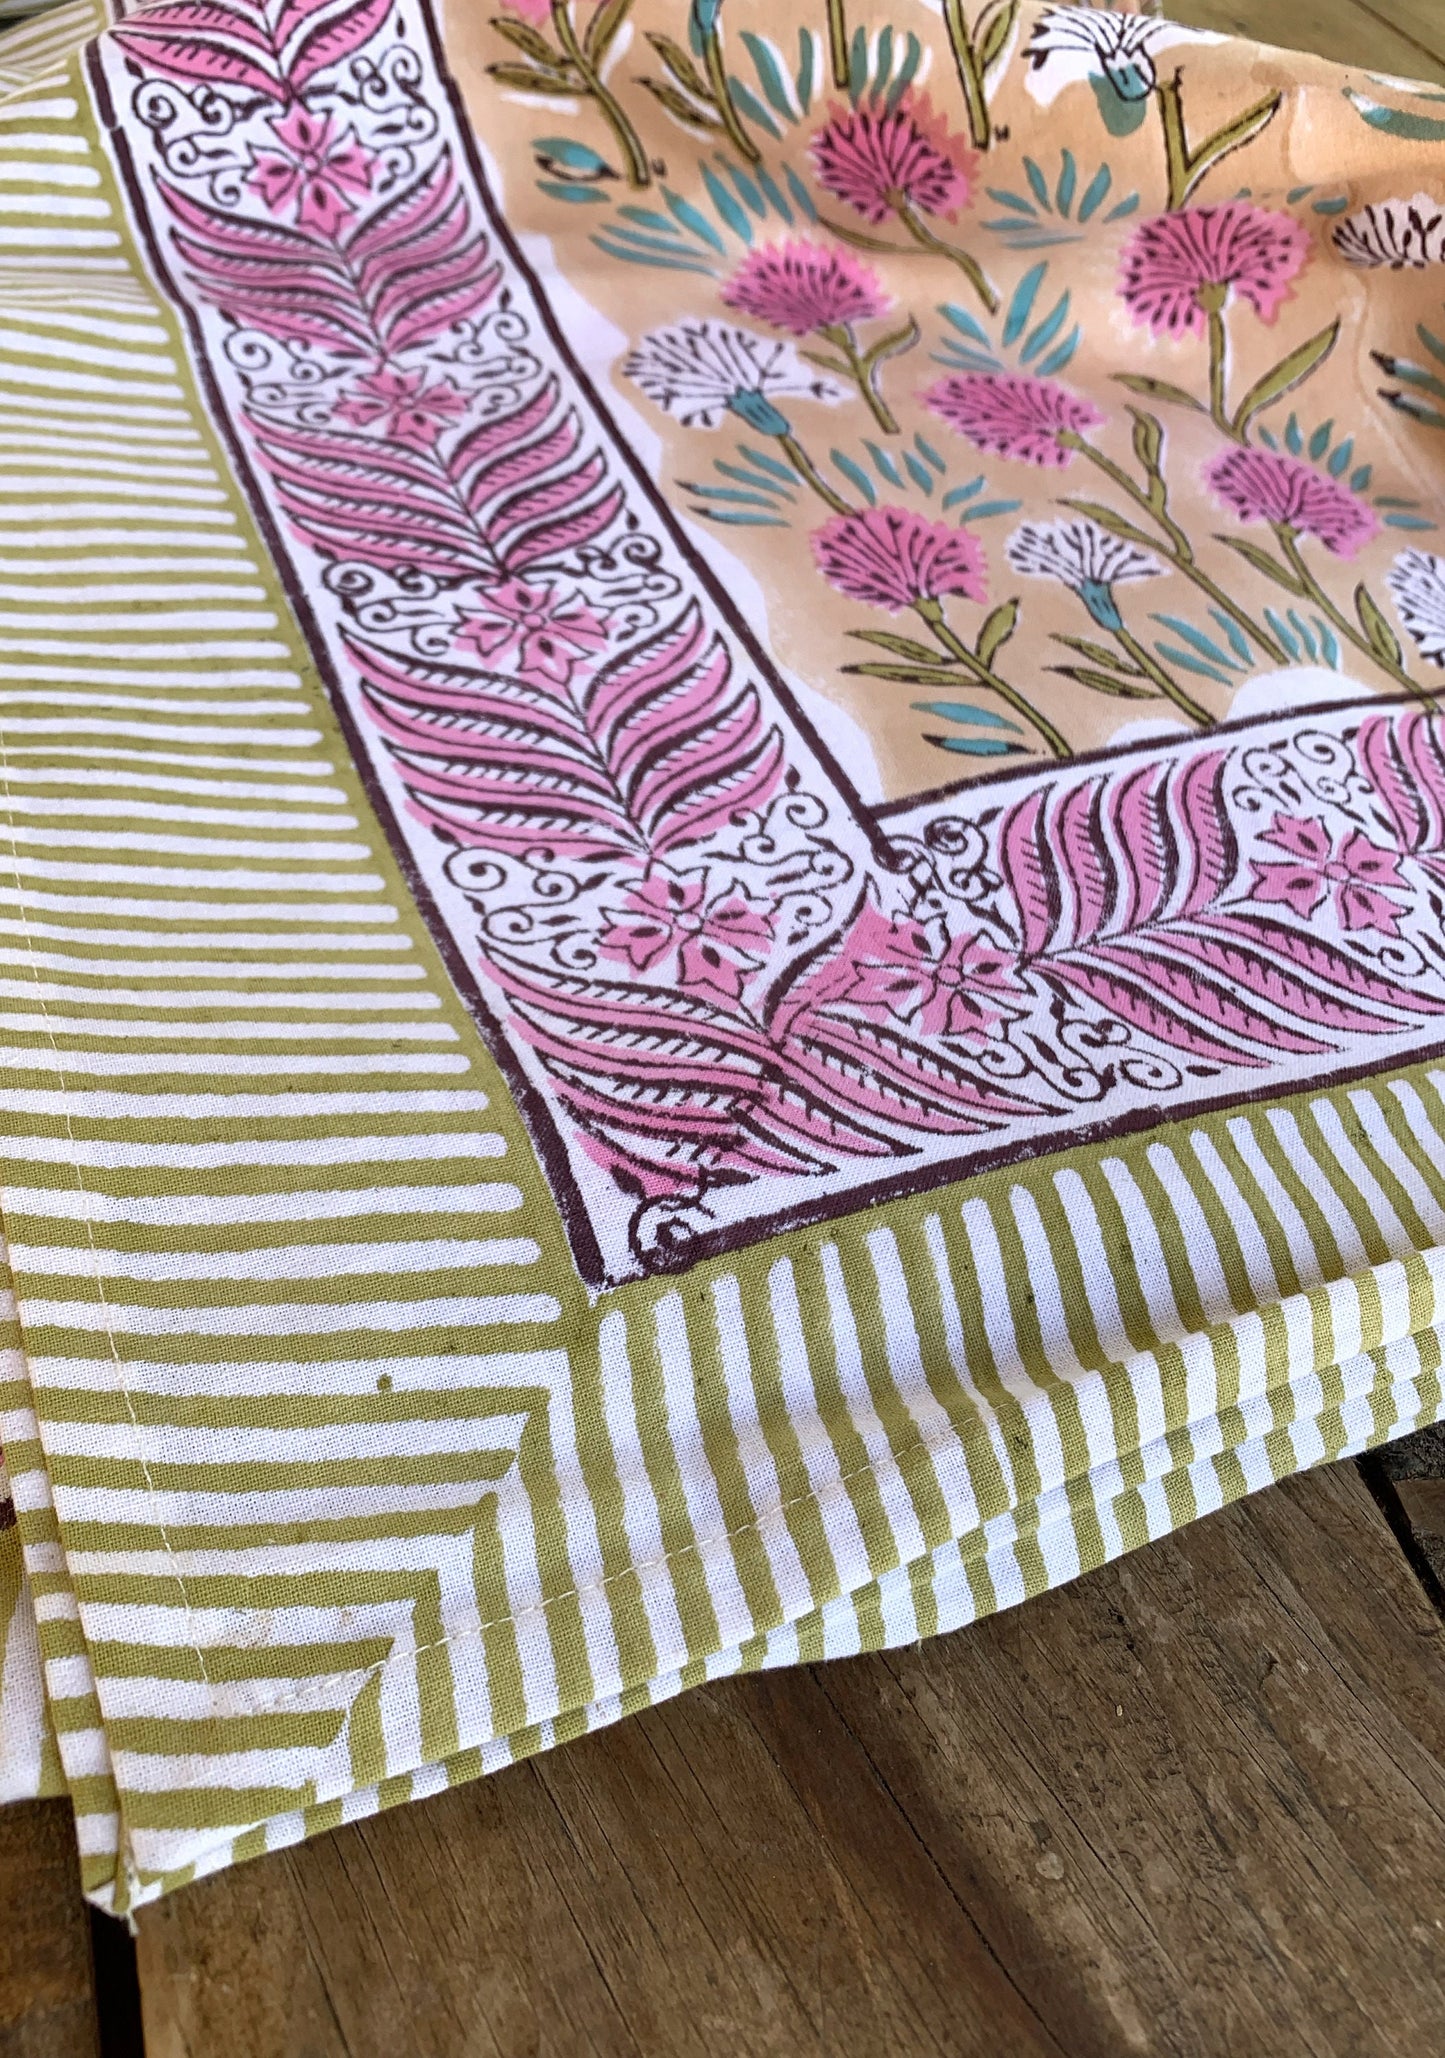 Mantel algodón puro estampado block print artesanal en India · Seis comensales · Mantel boho chic 100% algodón hindú · Melocotón, rosa y verde